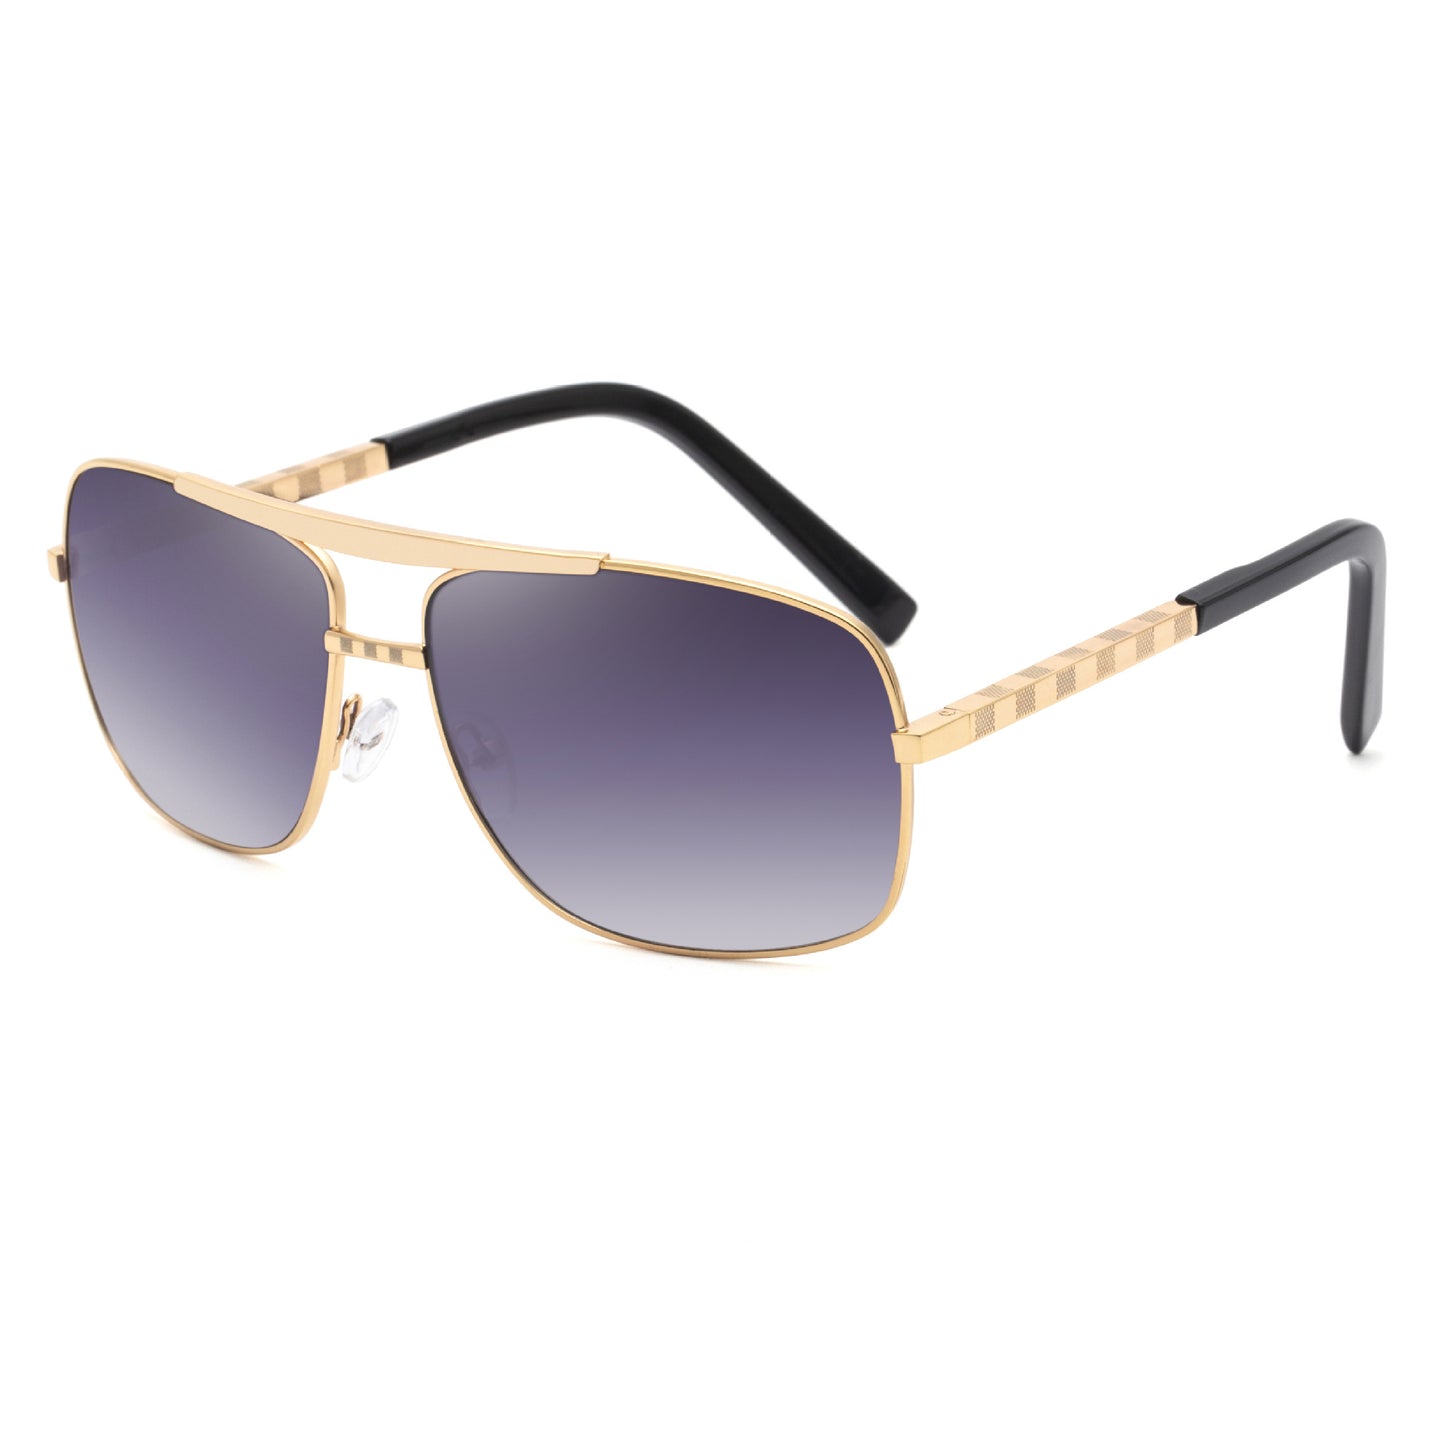 New Sunglasses Men's Retro Square Frame Slingshot Sunglasses Men's Fashion  Shades